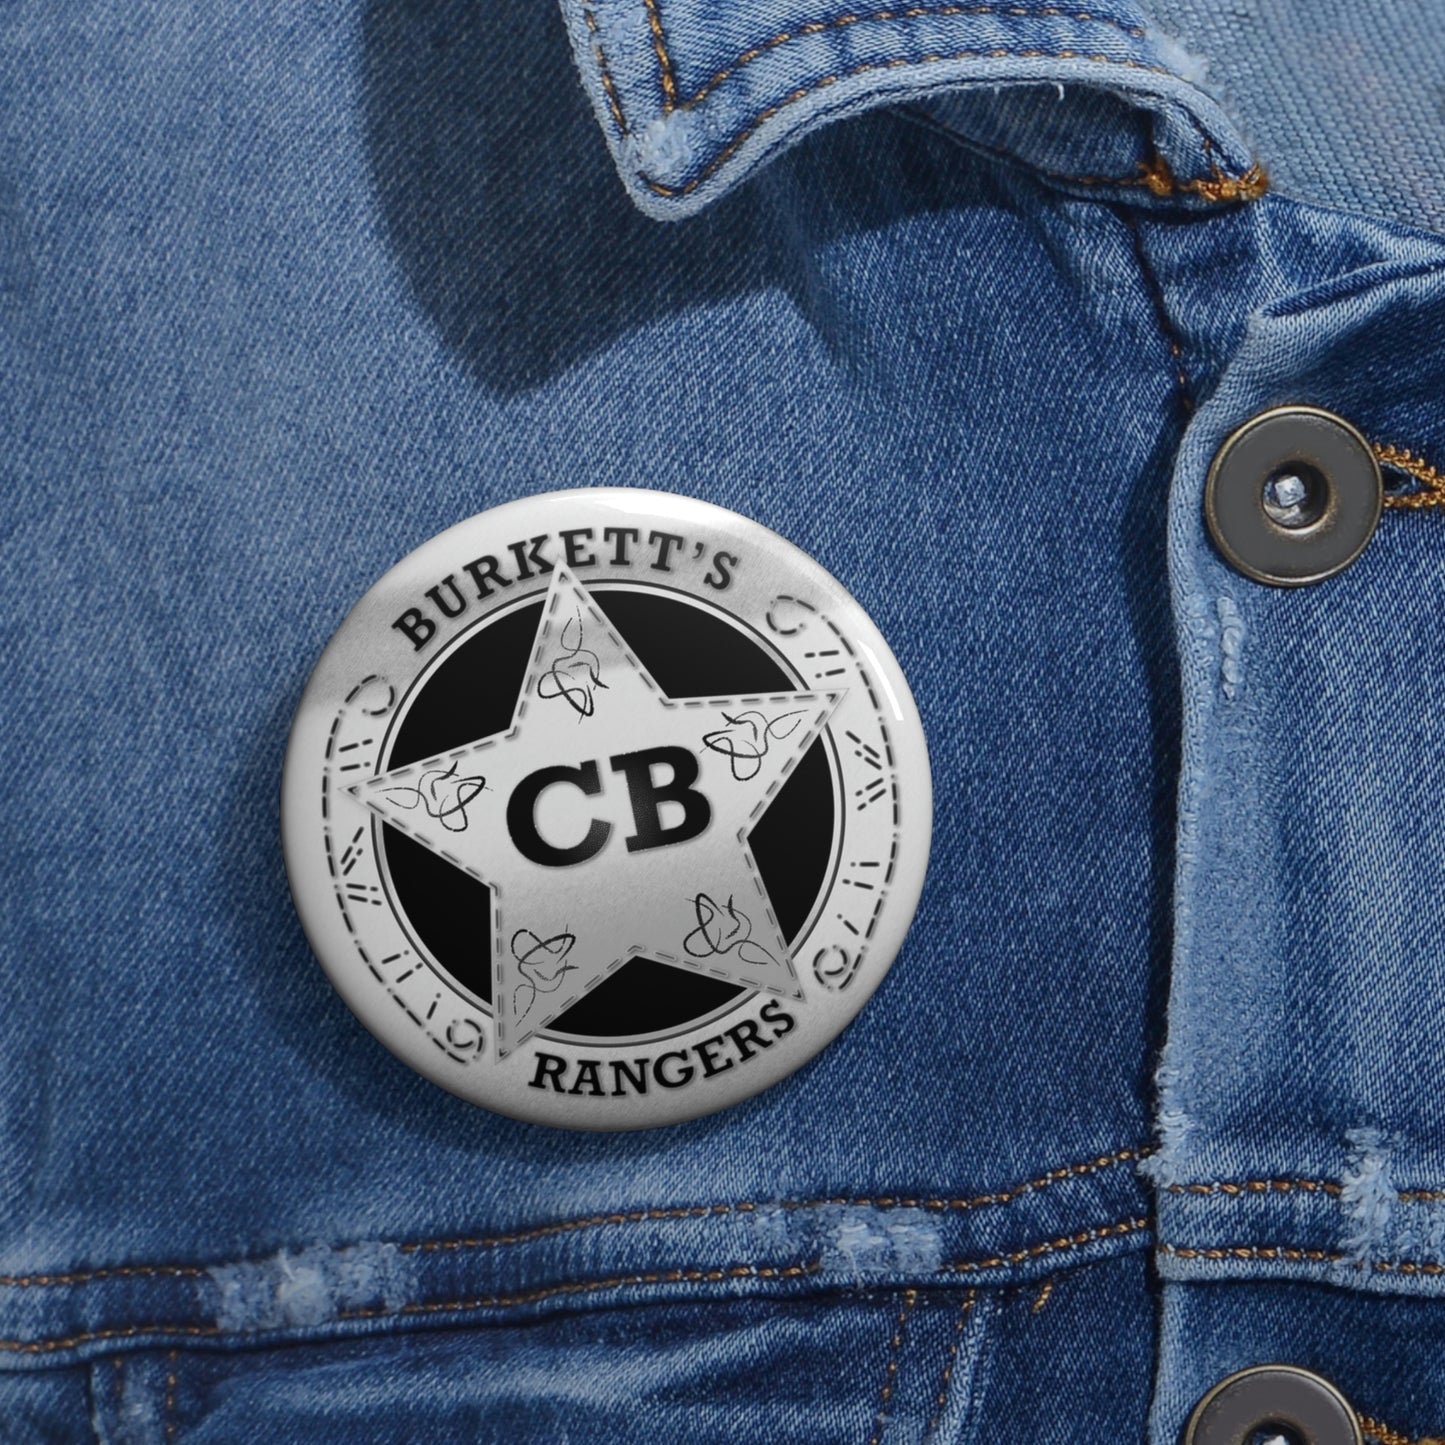 Burkett's Rangers Pin Buttons